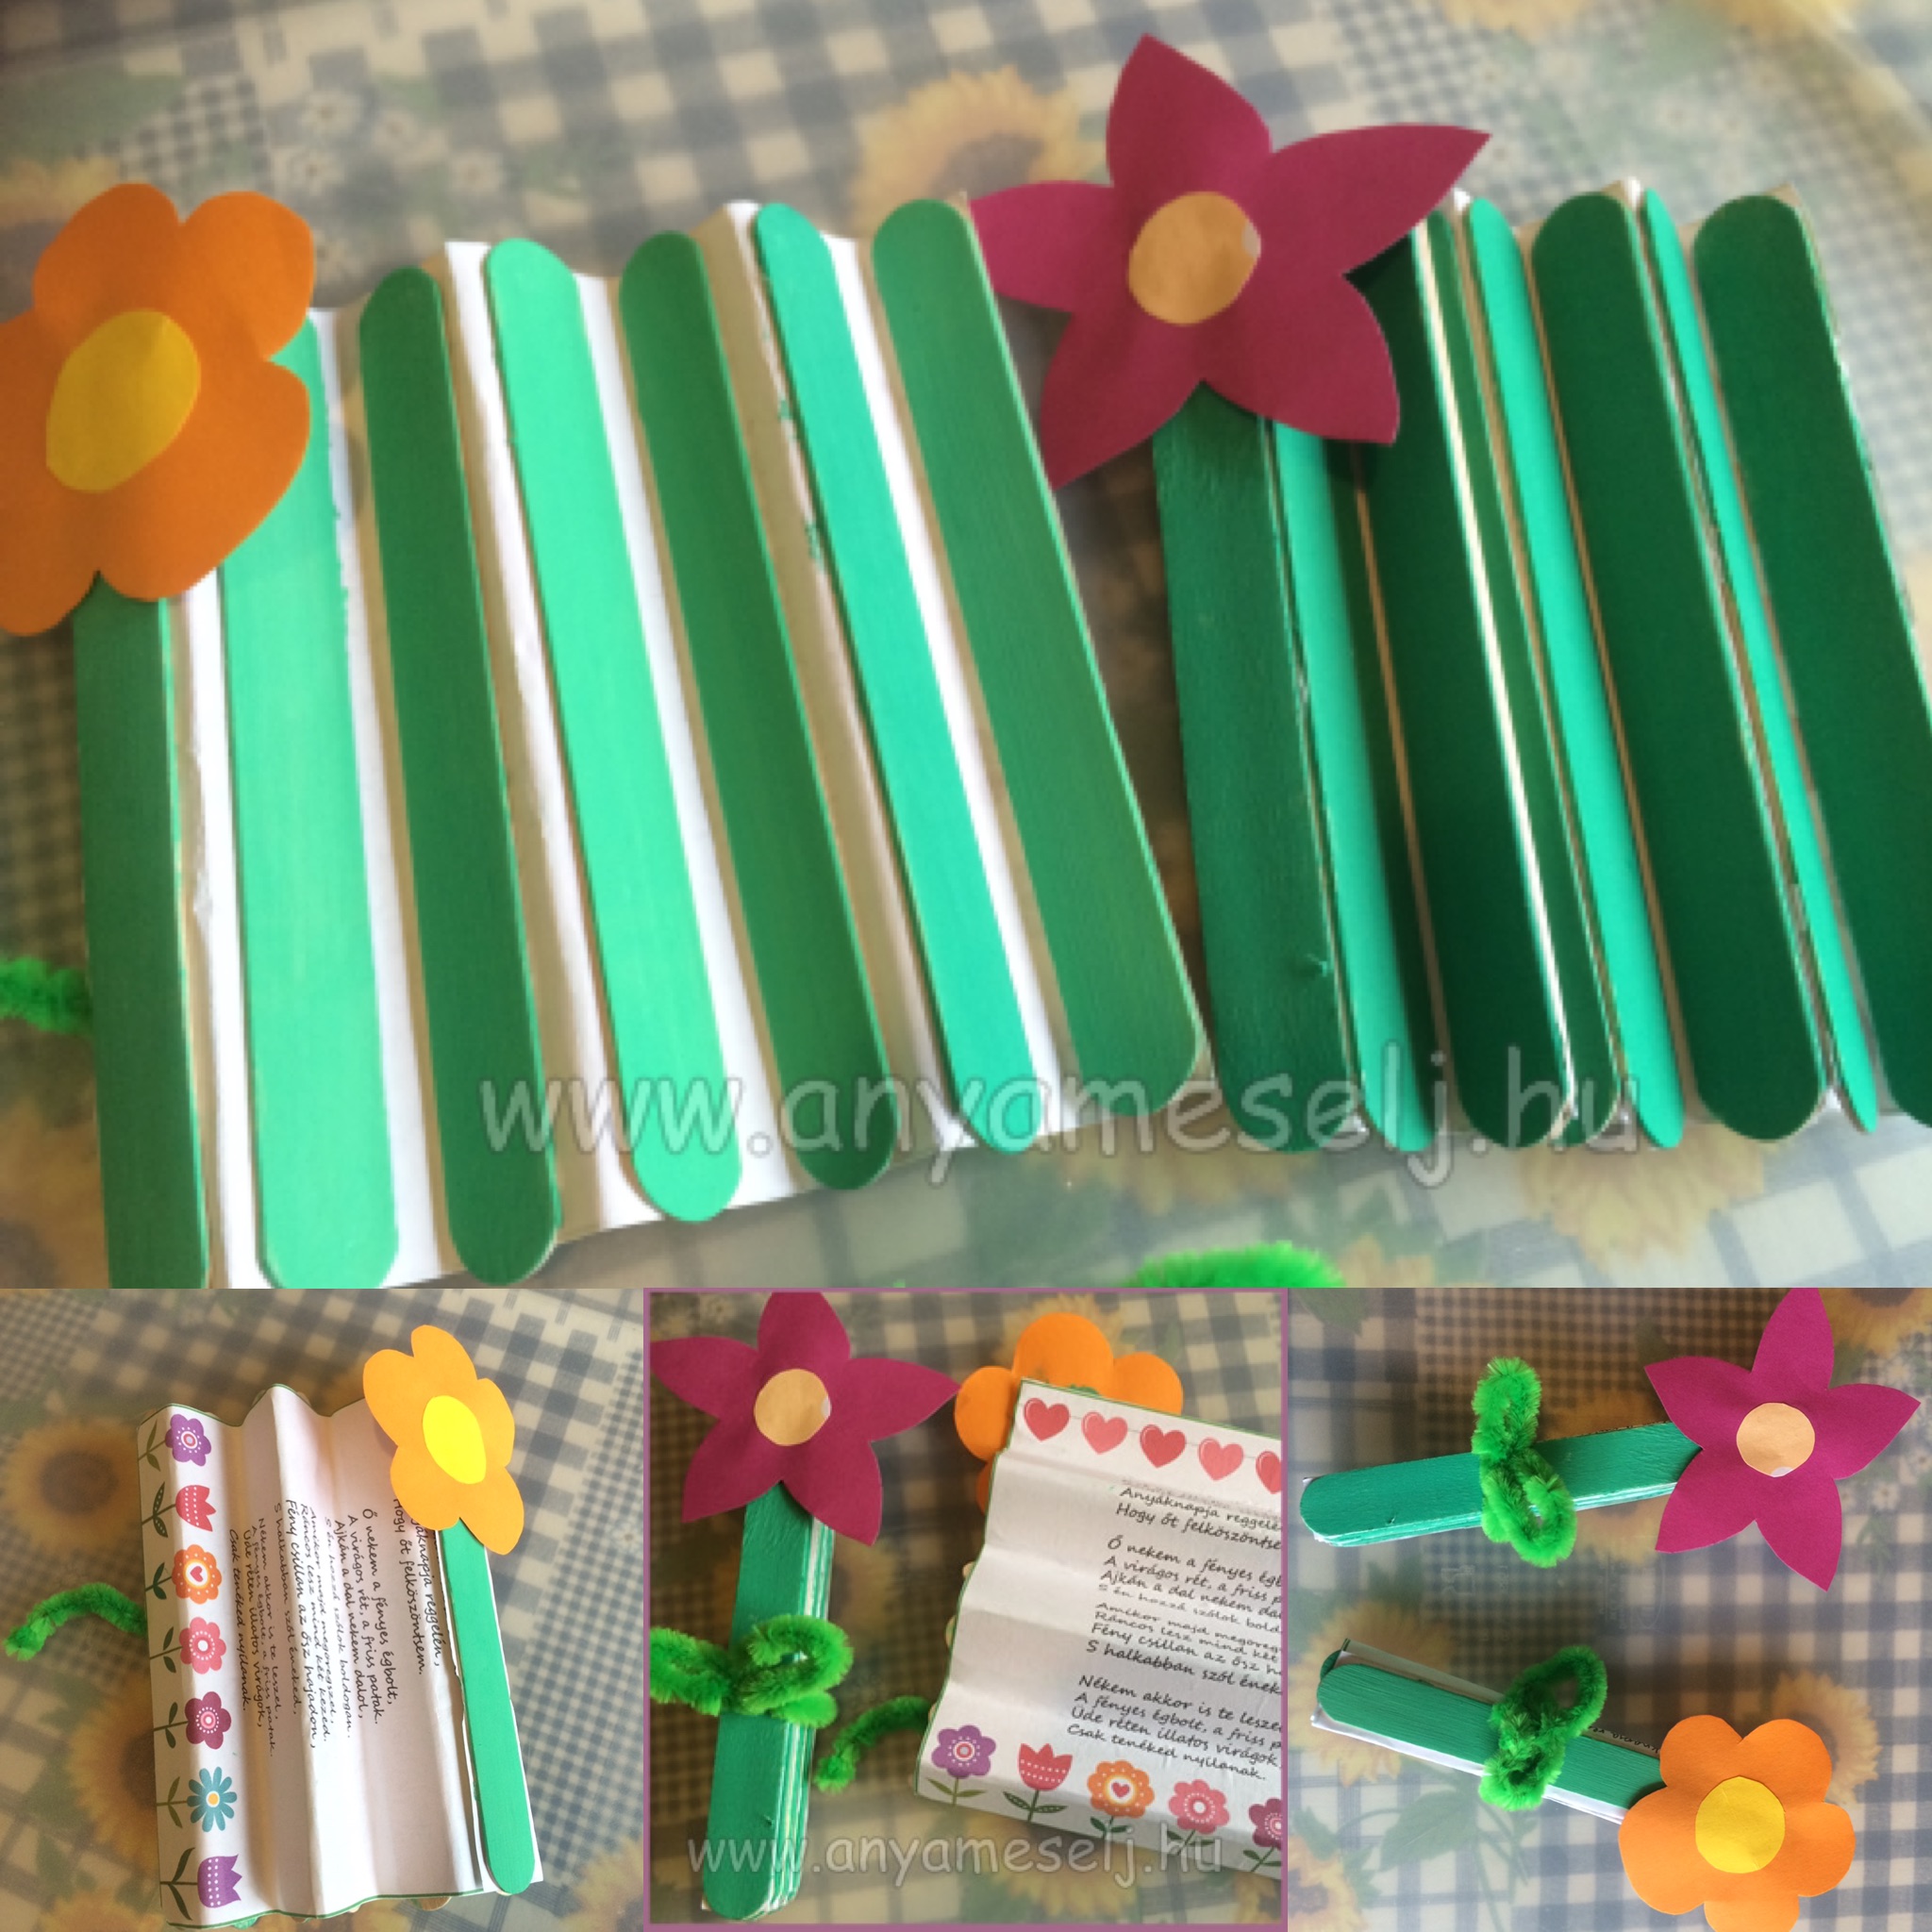 ✂🎨🎁 Saját készítésű ajándék tipp pedagógusnapra 🙂

Szükséges eszközök:
- 9 db faspatula
- zöld színű festék
- színes papírok (virágok elkészítéséhez)
- zseníliadrót

Így készült:

1. A 9 db faspatulát (ami gyógyszertárba és kreatív boltokban kapható) lefestettük zöld színűre.
2. Kinyomtattuk az óvónéninek szánt verset, amit szerettünk volna a virágba rejteni.
Tipp: Kerülhet bele a gyerkőc rajza, vagy saját kézzel készült üzenete is.
3. A kinyomtatott üzenetre elkezdtük felragasztani a faspatulákat, úgy hogy közben legyezőként hajtogattuk meg a papírt.
4. Amikor az összes zöld faspatulát felragasztottuk, megvártuk míg megszárad, addig elkészítettük a virág szirmait, amit ráragasztottunk a spatulára.
5. Átkötöttük zöld zsenília dróttal, és már készen is van. 🙂

#virágbazártüzenet #ajándék #pedagógusnap #ötlet #otthonelkészíthető #ovisoknak #anyamesélj